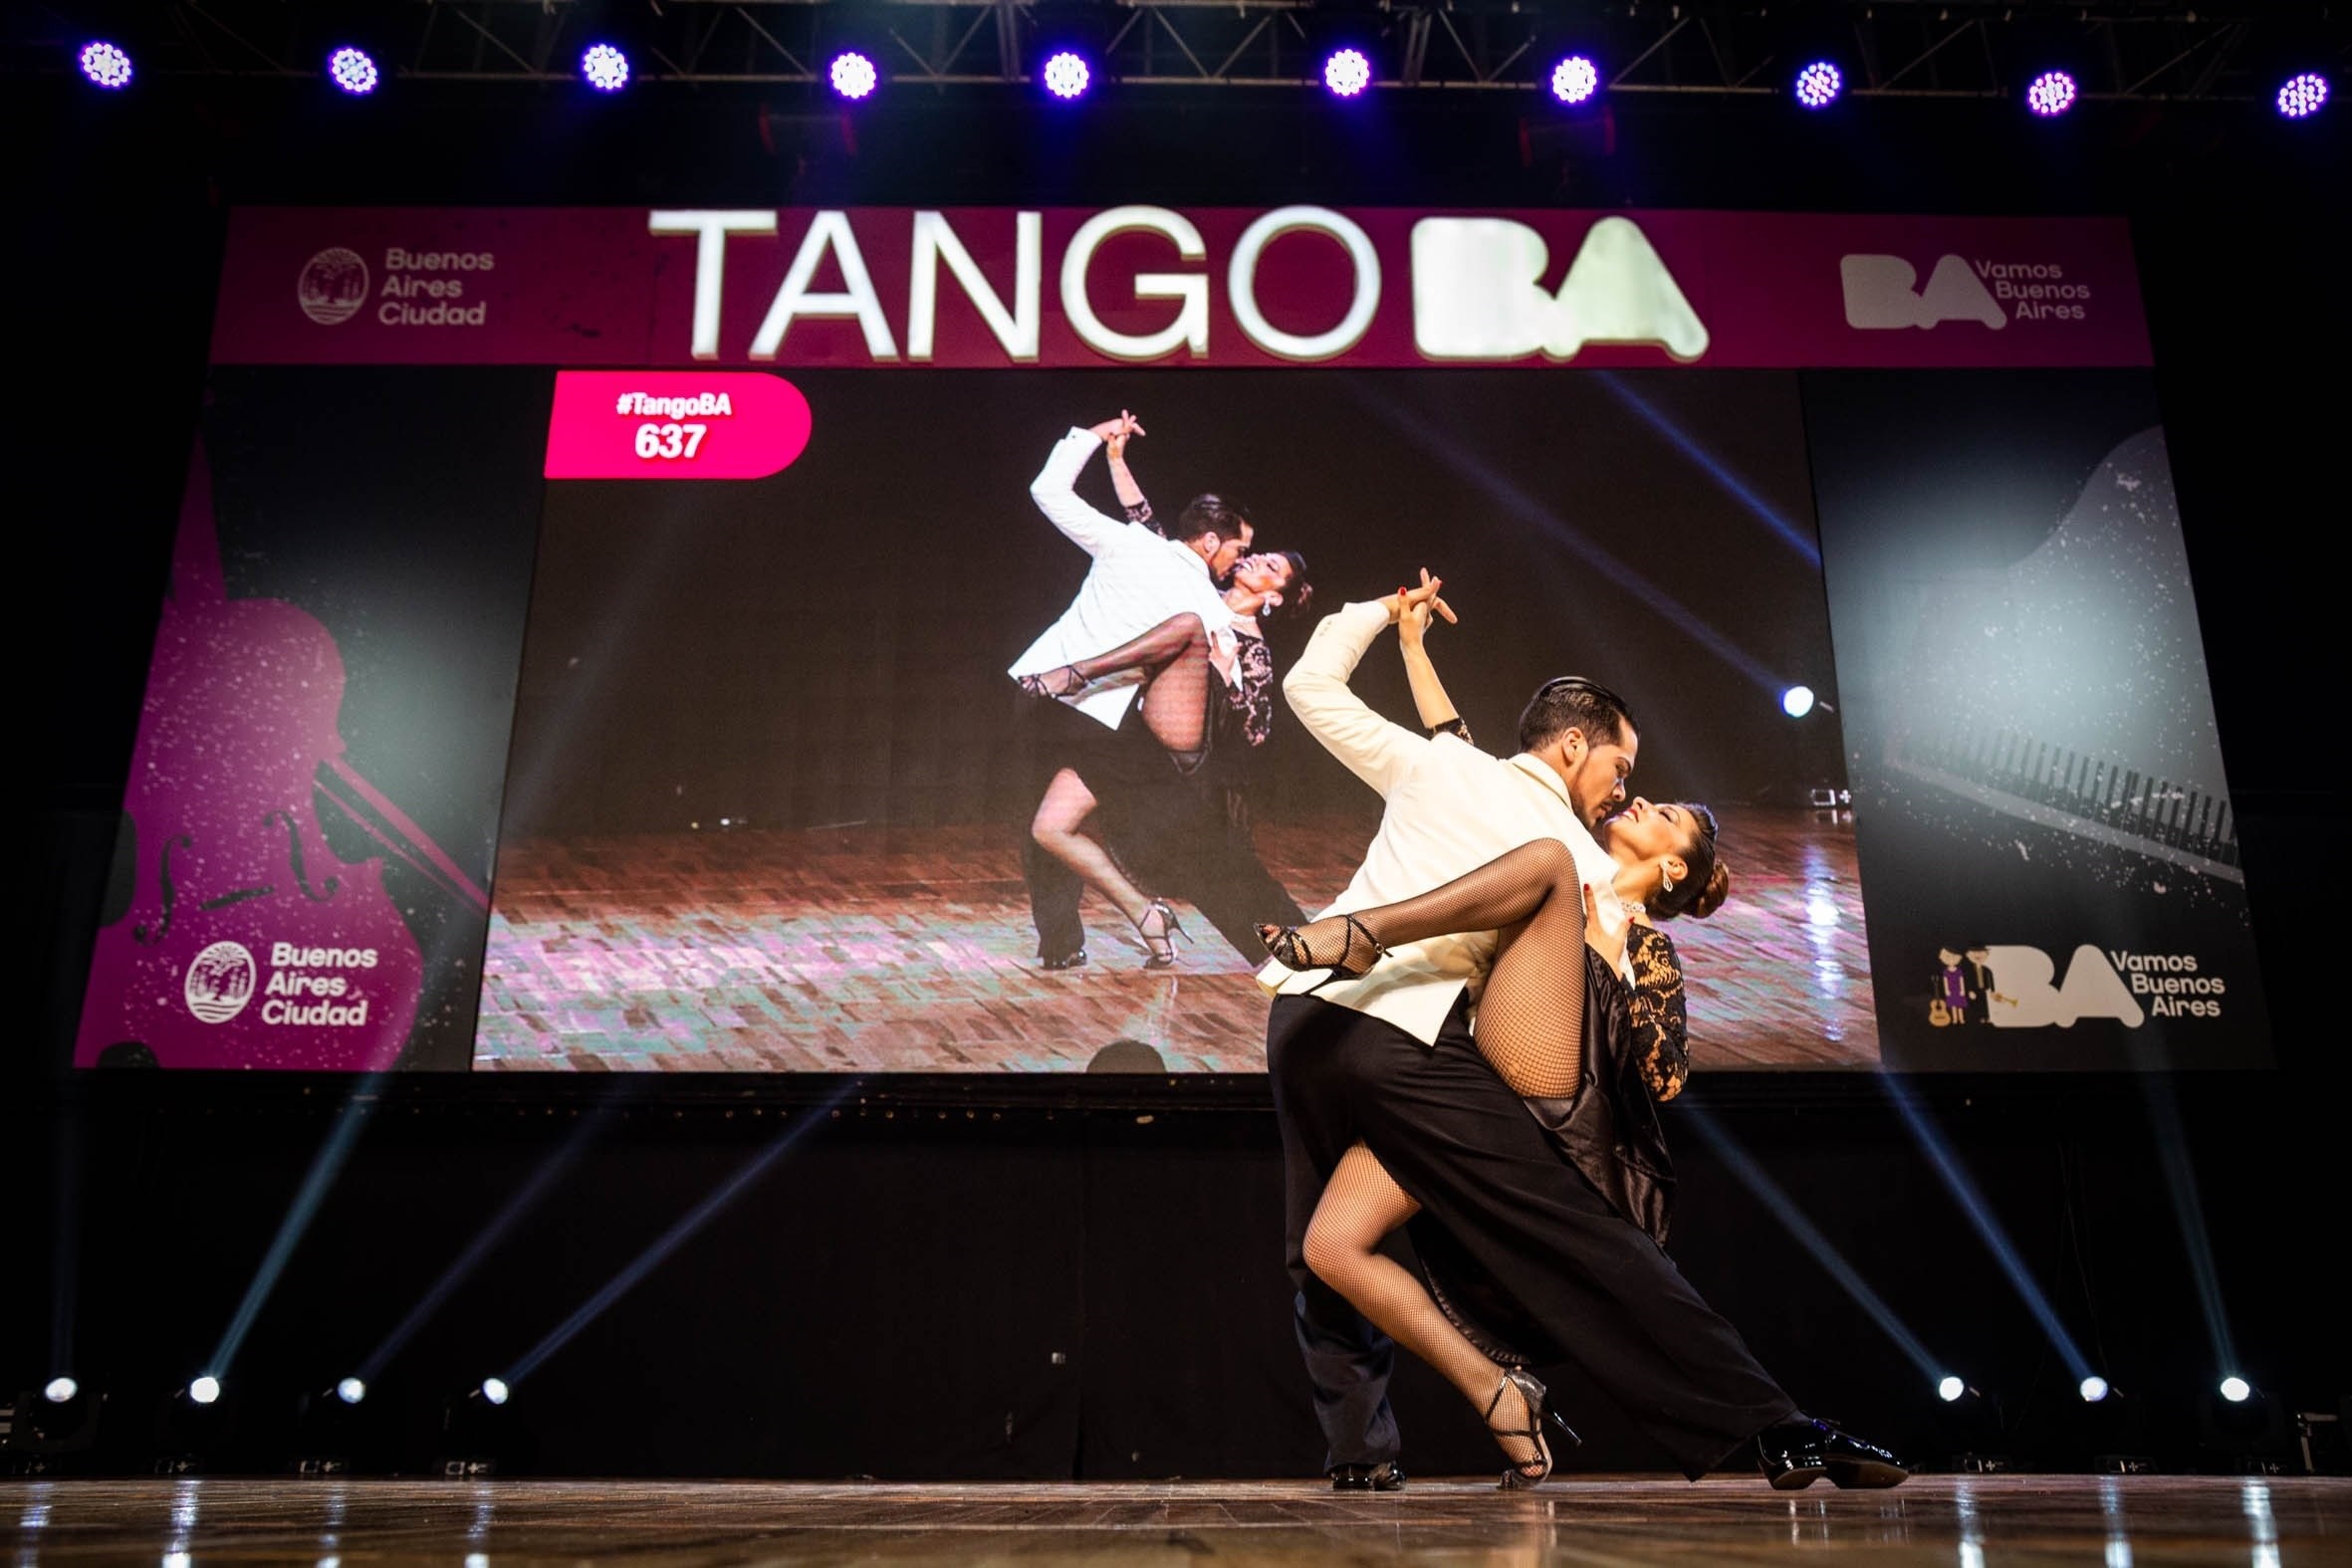 El Tango BA Festival y Mundial de Buenos Aires fue uno de los eventos de la etapa cultural pospandemia de la Ciudad